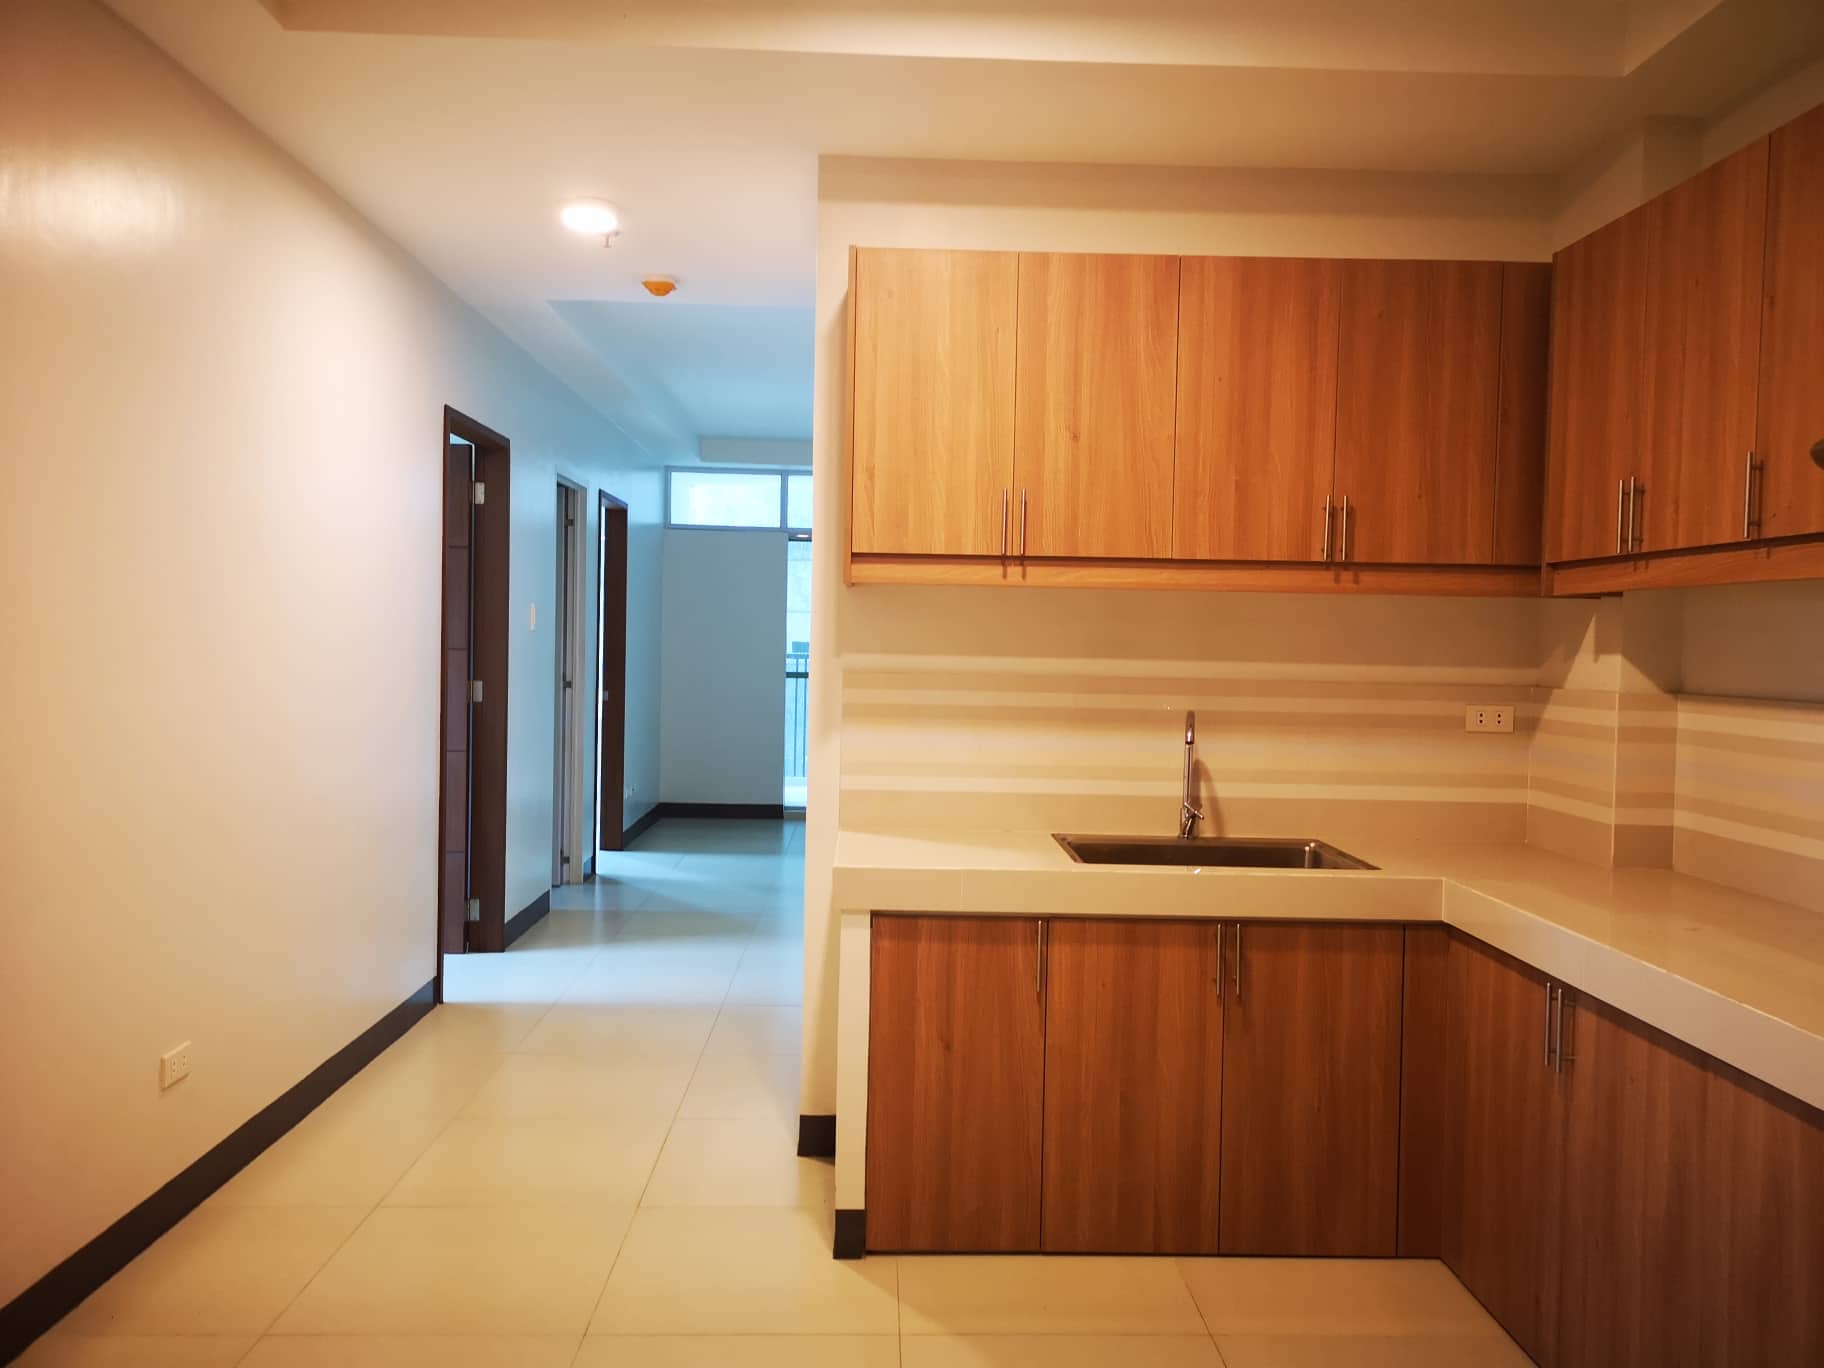 Affordable 3BR Apartment for rent Mandaue City Near SM City Cebu